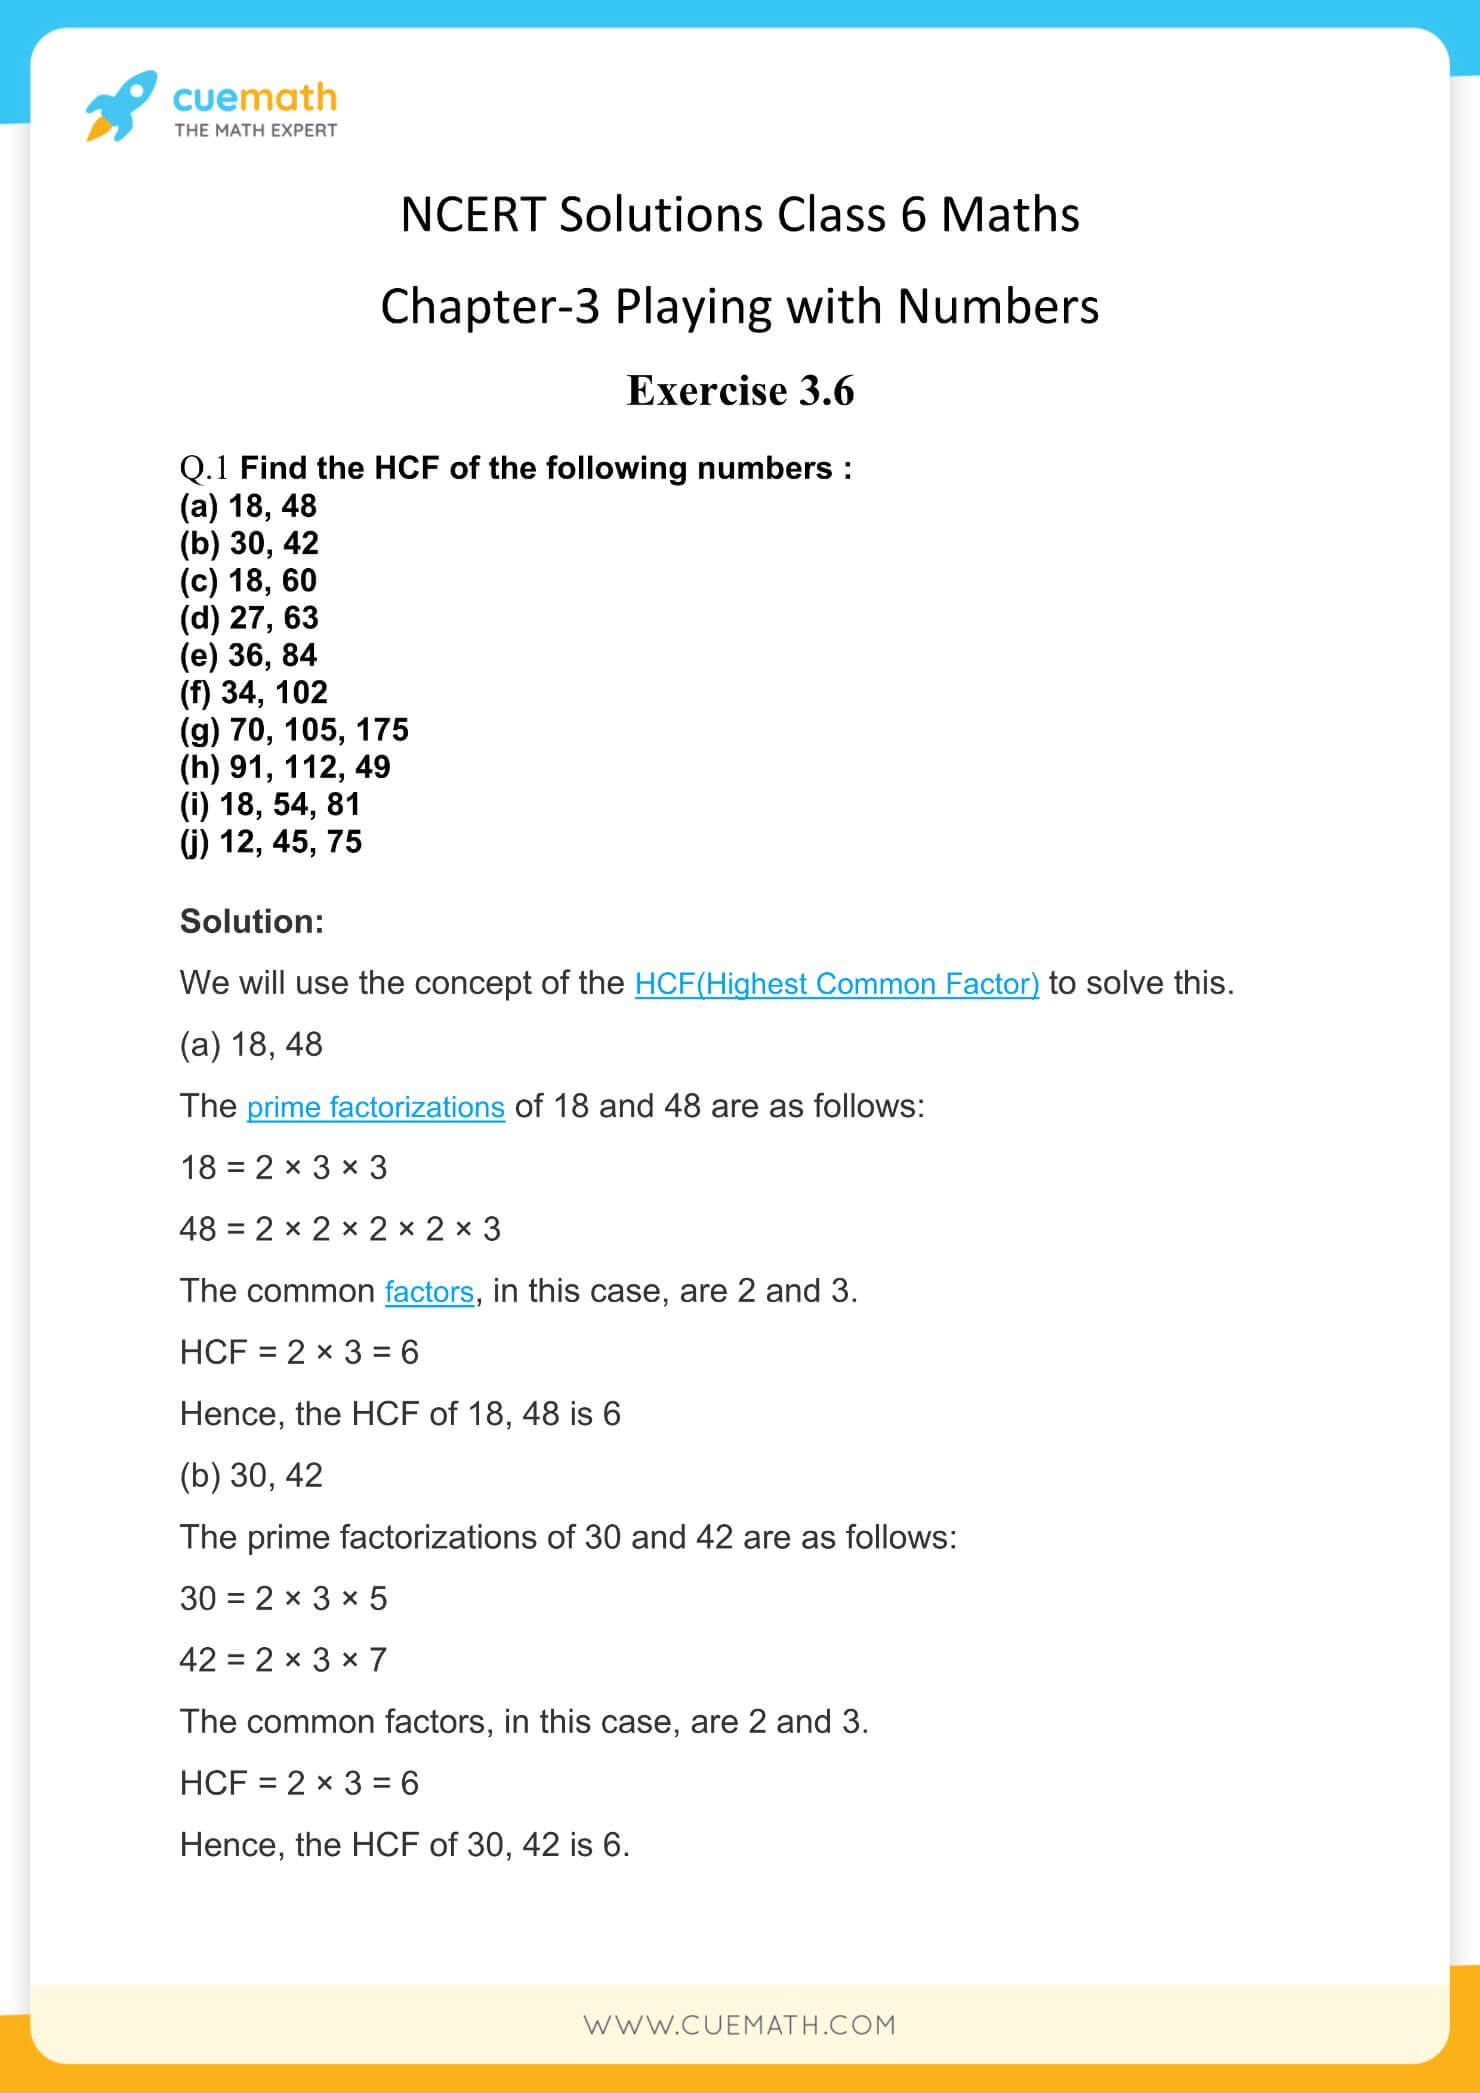 NCERT Solutions Class 6 Maths Chapter 3-32